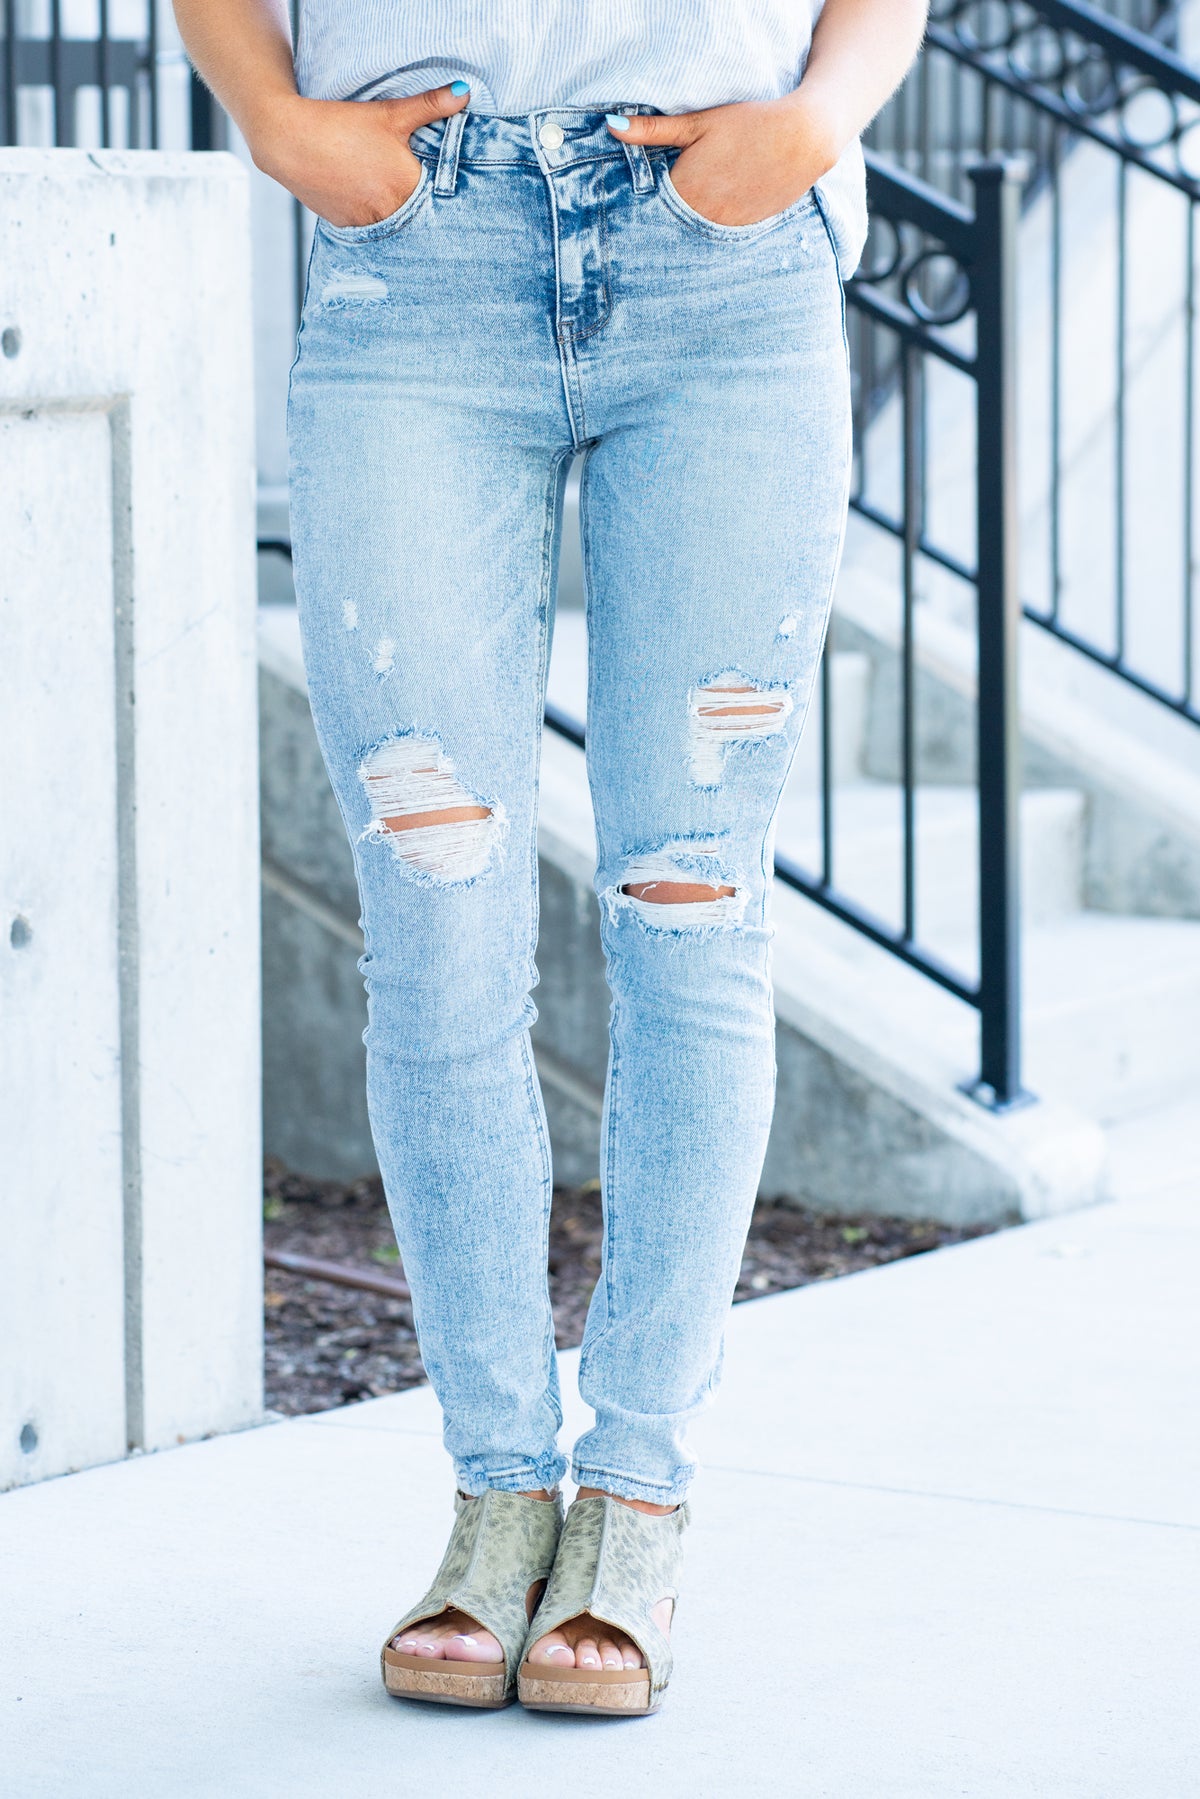 VERVET  Optic White High Rise Rise Skinny Jeans V2615 – American